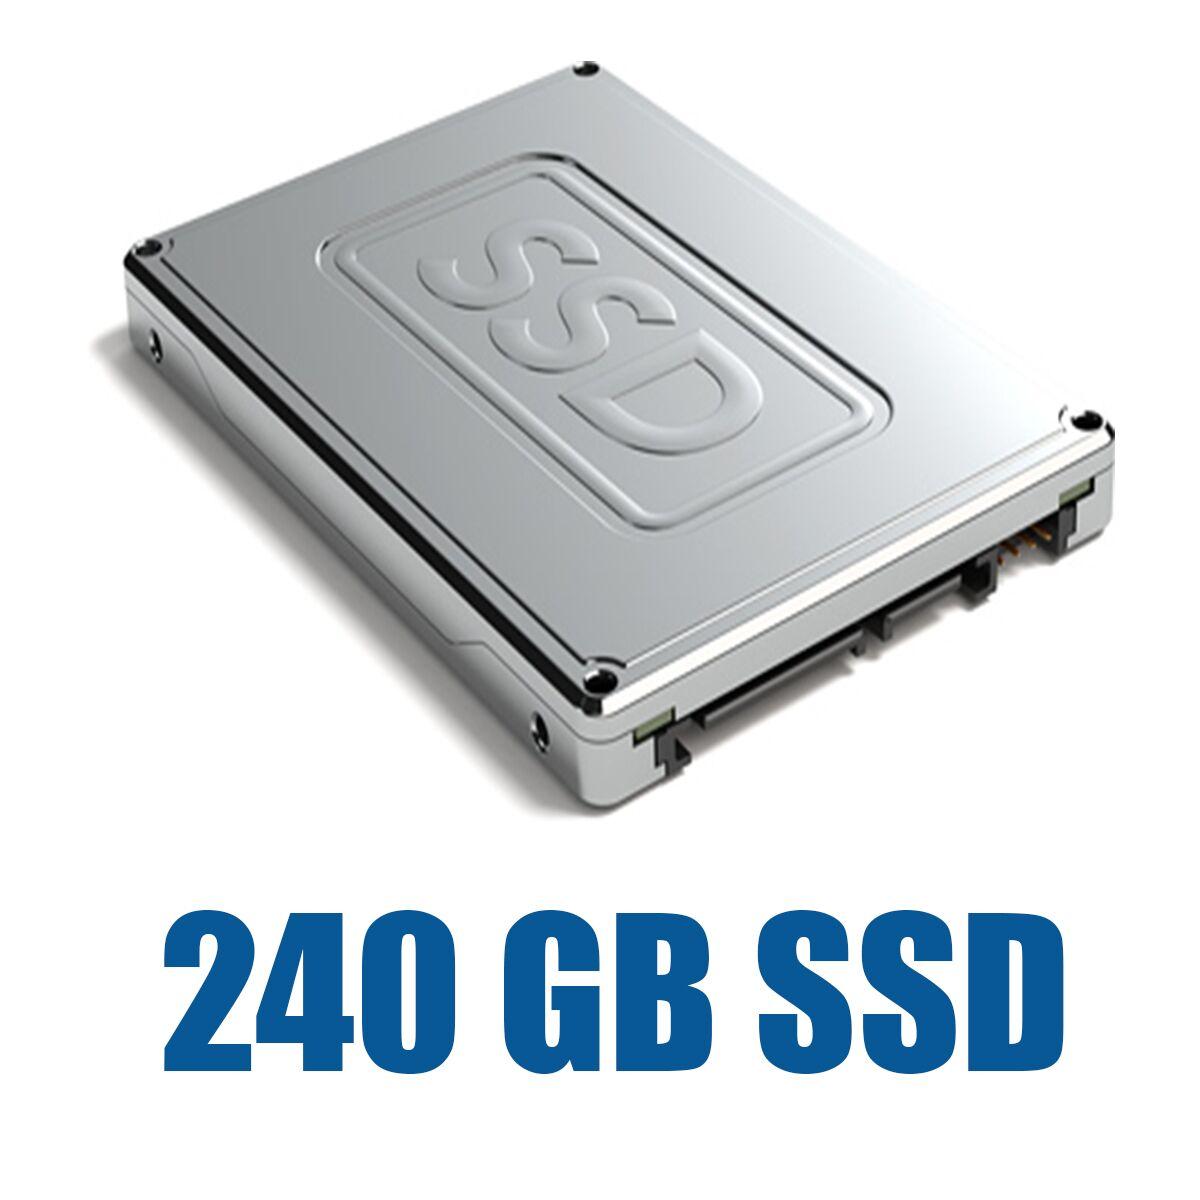 Модифікація: Комплектація SSD жорстким диском на 240 GB